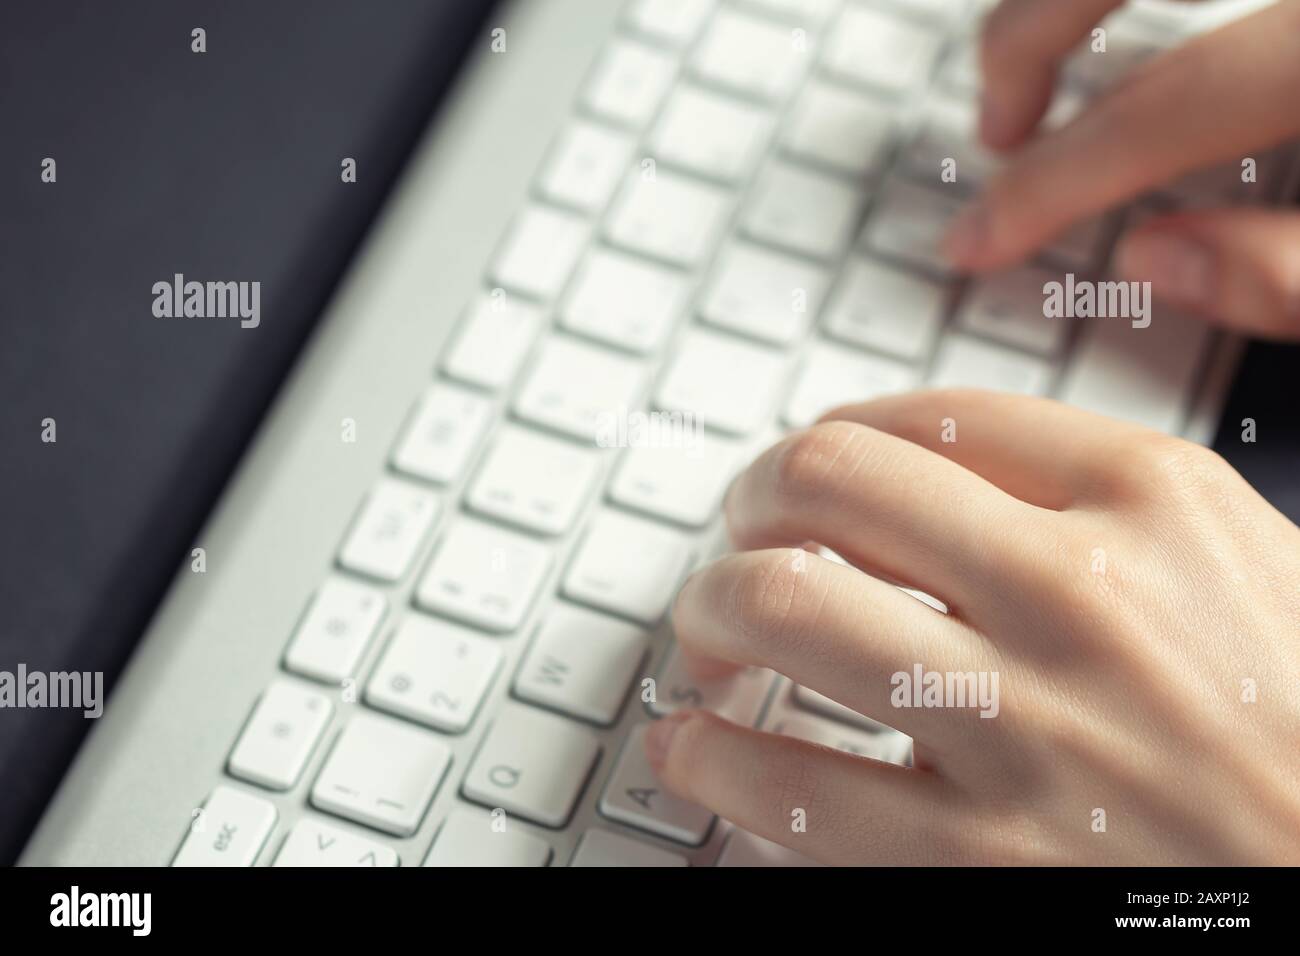 Mädchen arbeitet zu Hause am Computer. Weibliche Hände tippen auf die Tastatur, Nahaufnahme. Stockfoto